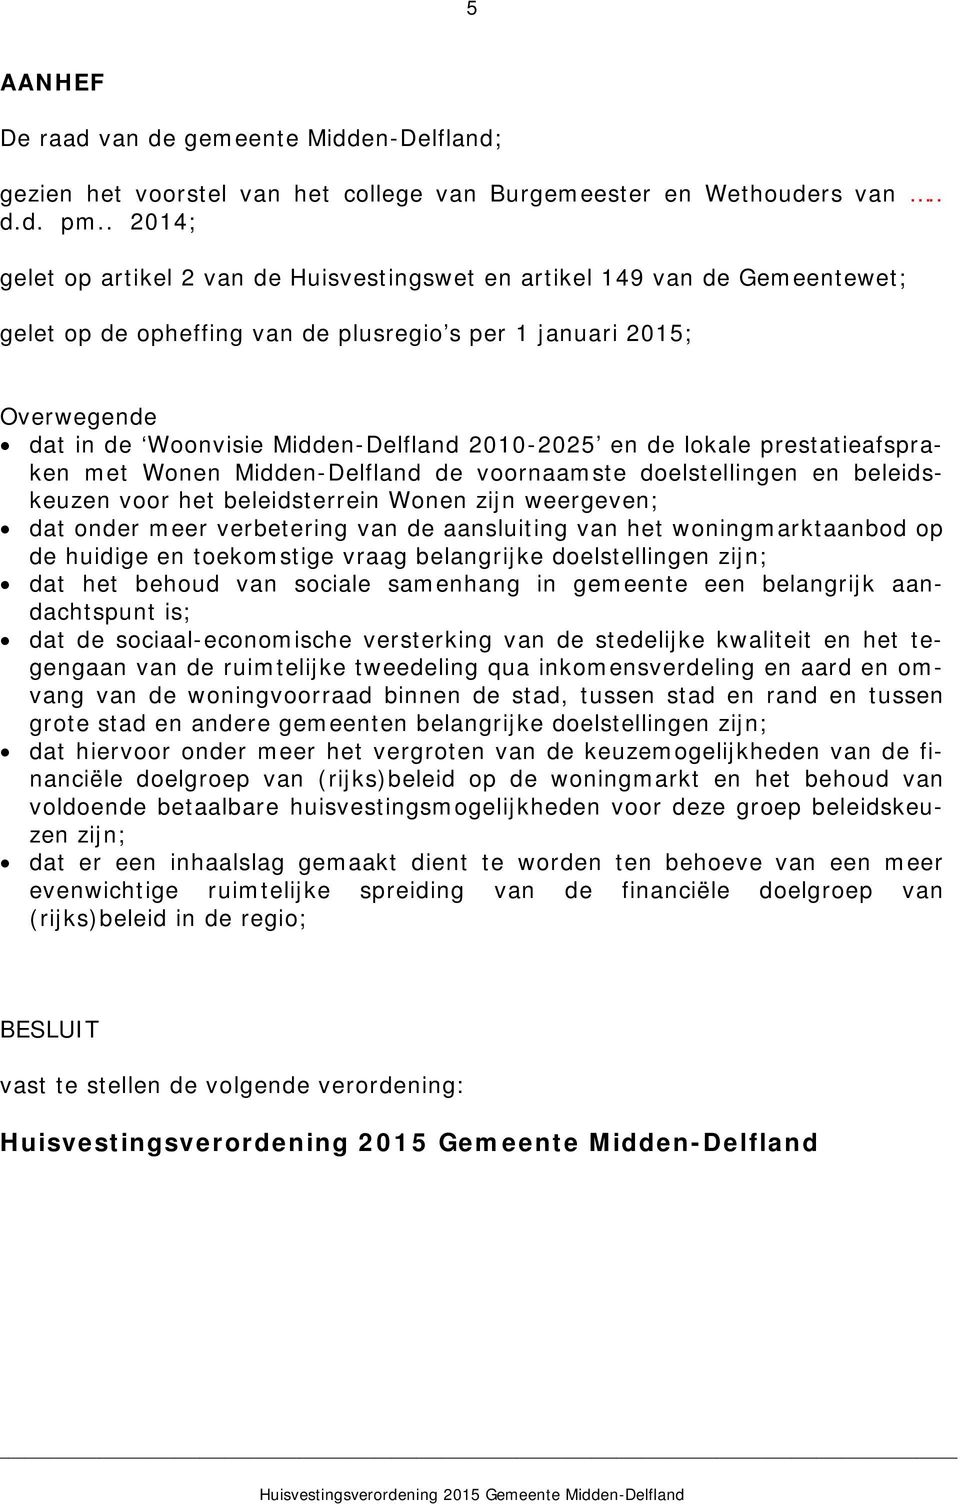 2010-2025 en de lokale prestatieafspraken met Wonen Midden-Delfland de voornaamste doelstellingen en beleidskeuzen voor het beleidsterrein Wonen zijn weergeven; dat onder meer verbetering van de